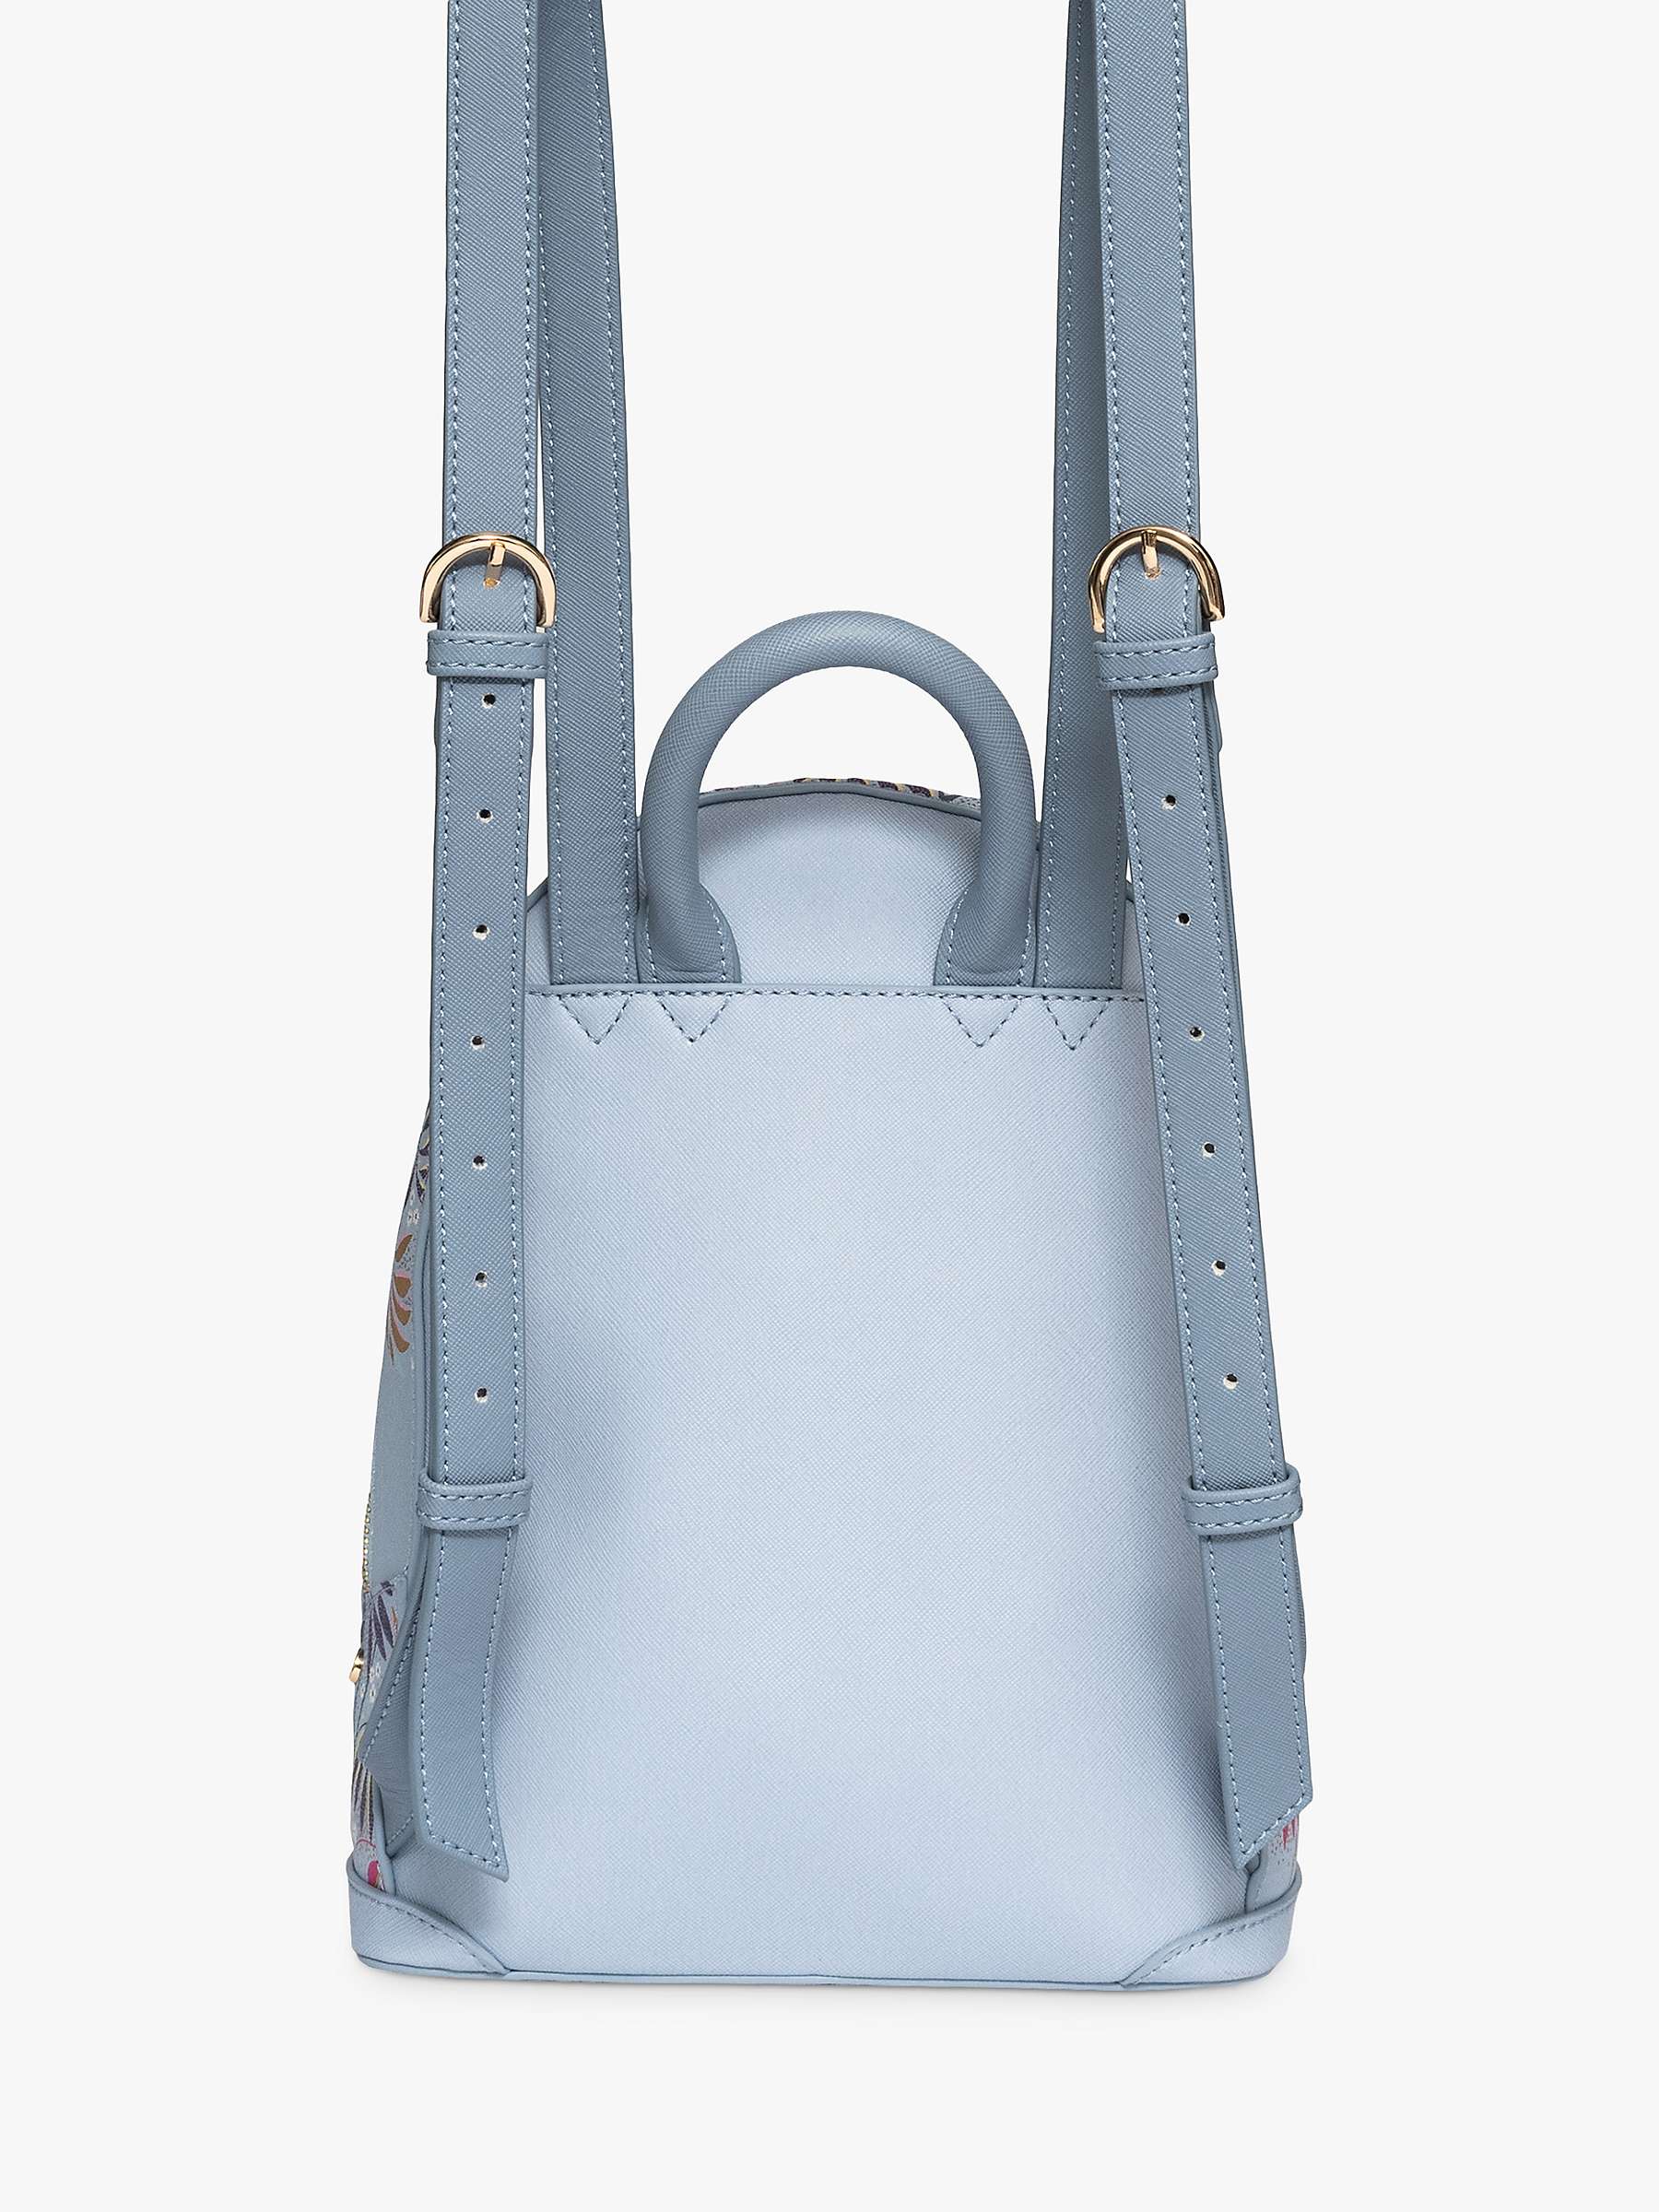 Buy Sara Miller Mini Crane Backpack, Pale Blue Online at johnlewis.com